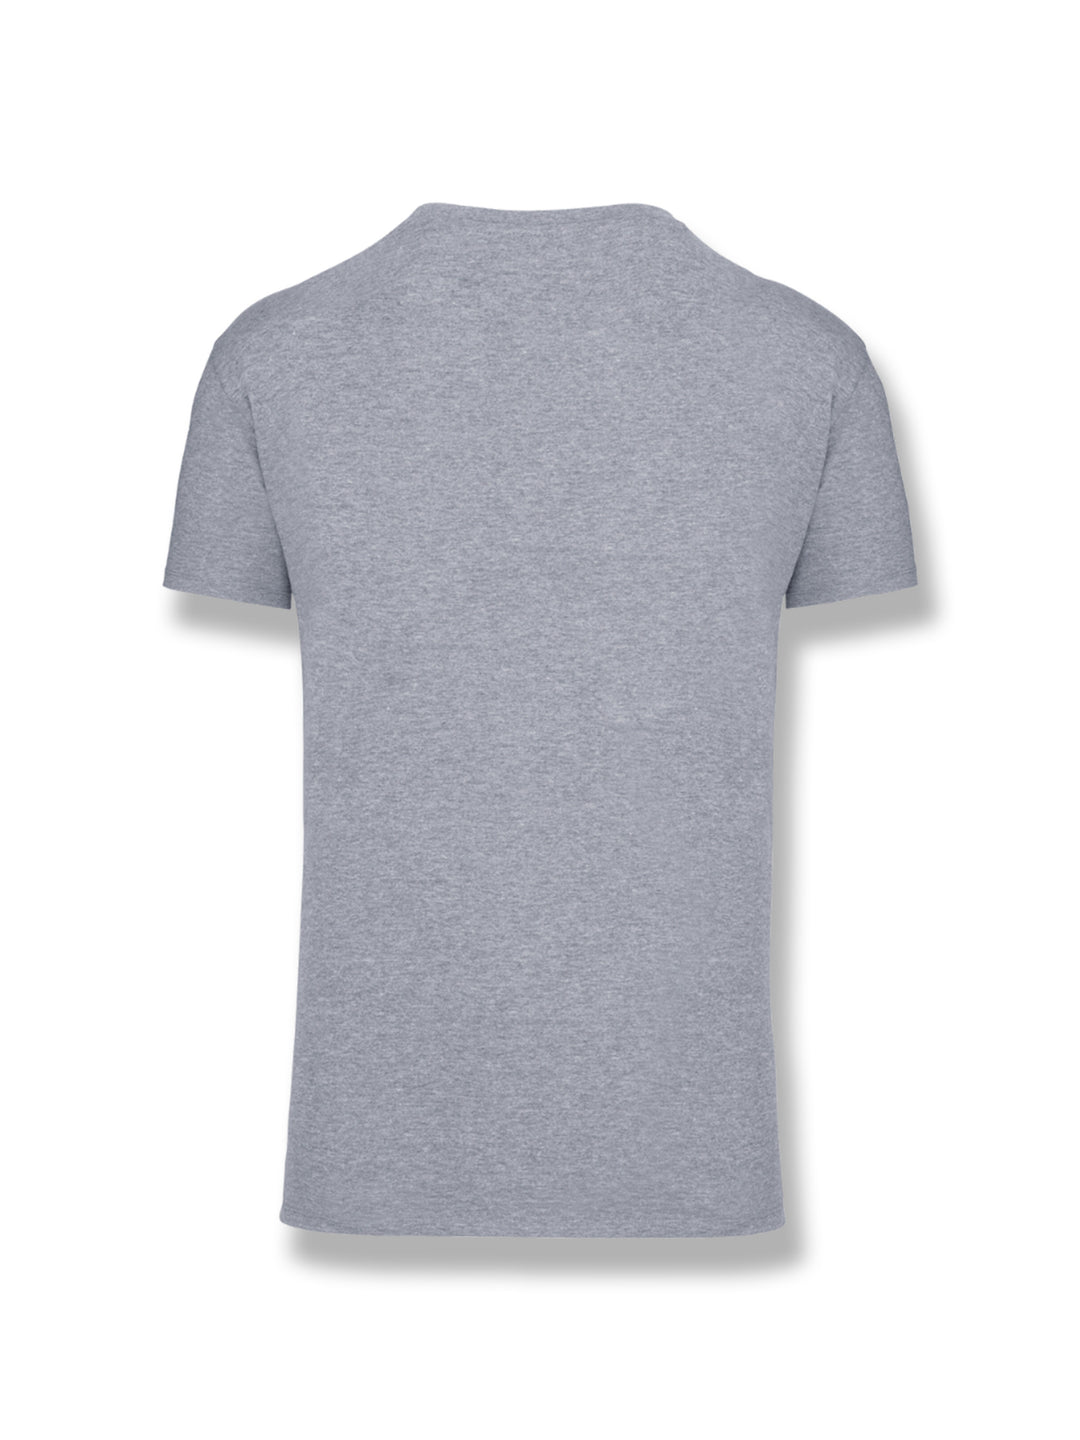 City Cotton T-Shirt - Men